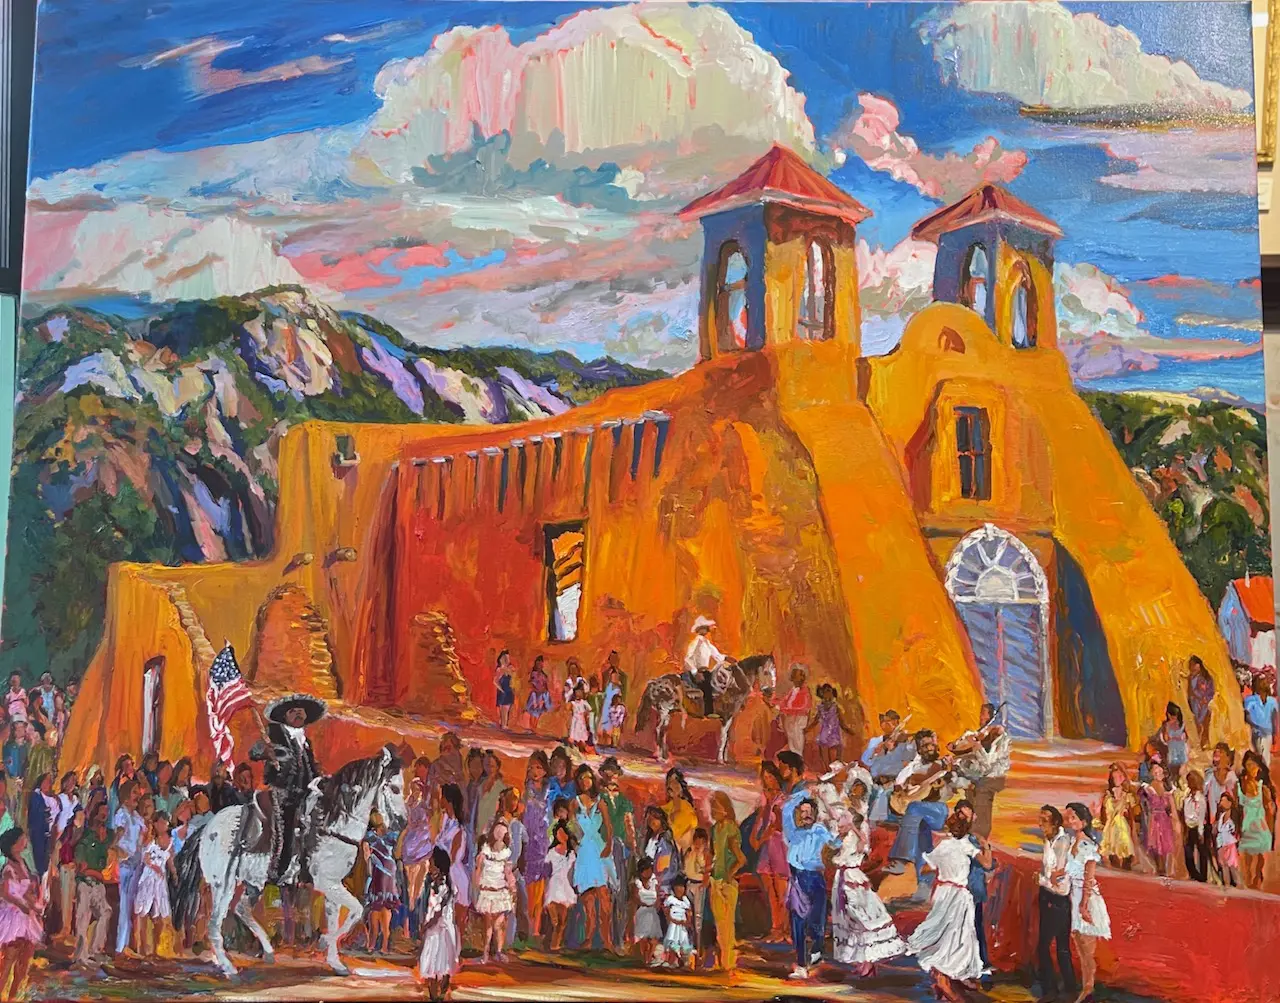 Ranchos Fiestas Oil Painting by Pat Woodall